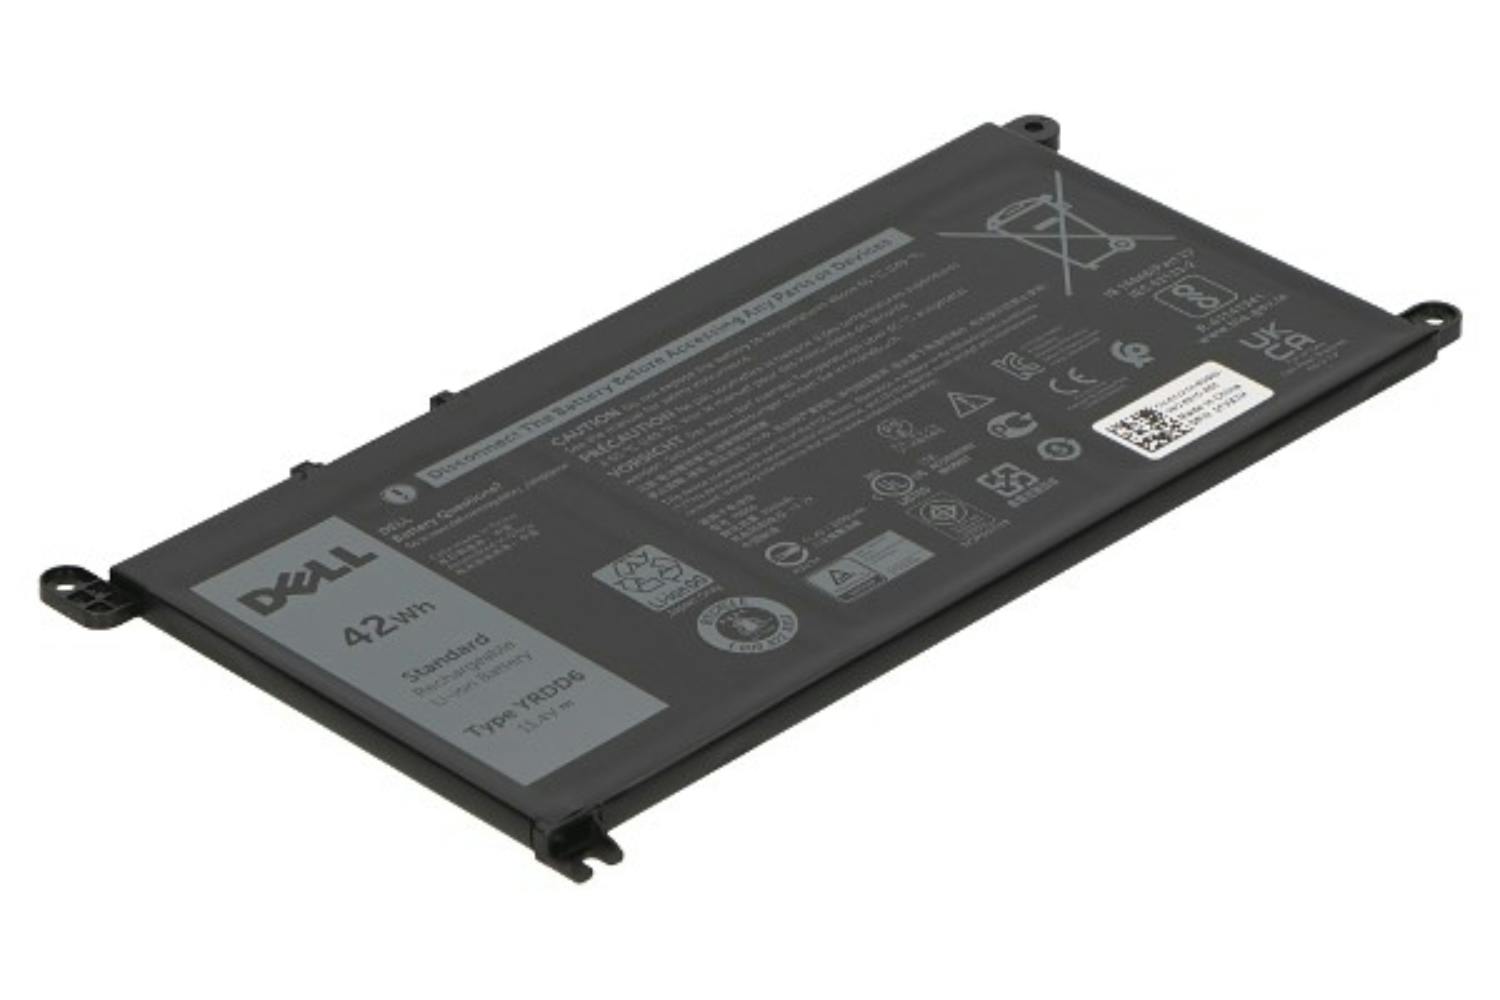 Dell VM732 3500mAh Main Battery Pack